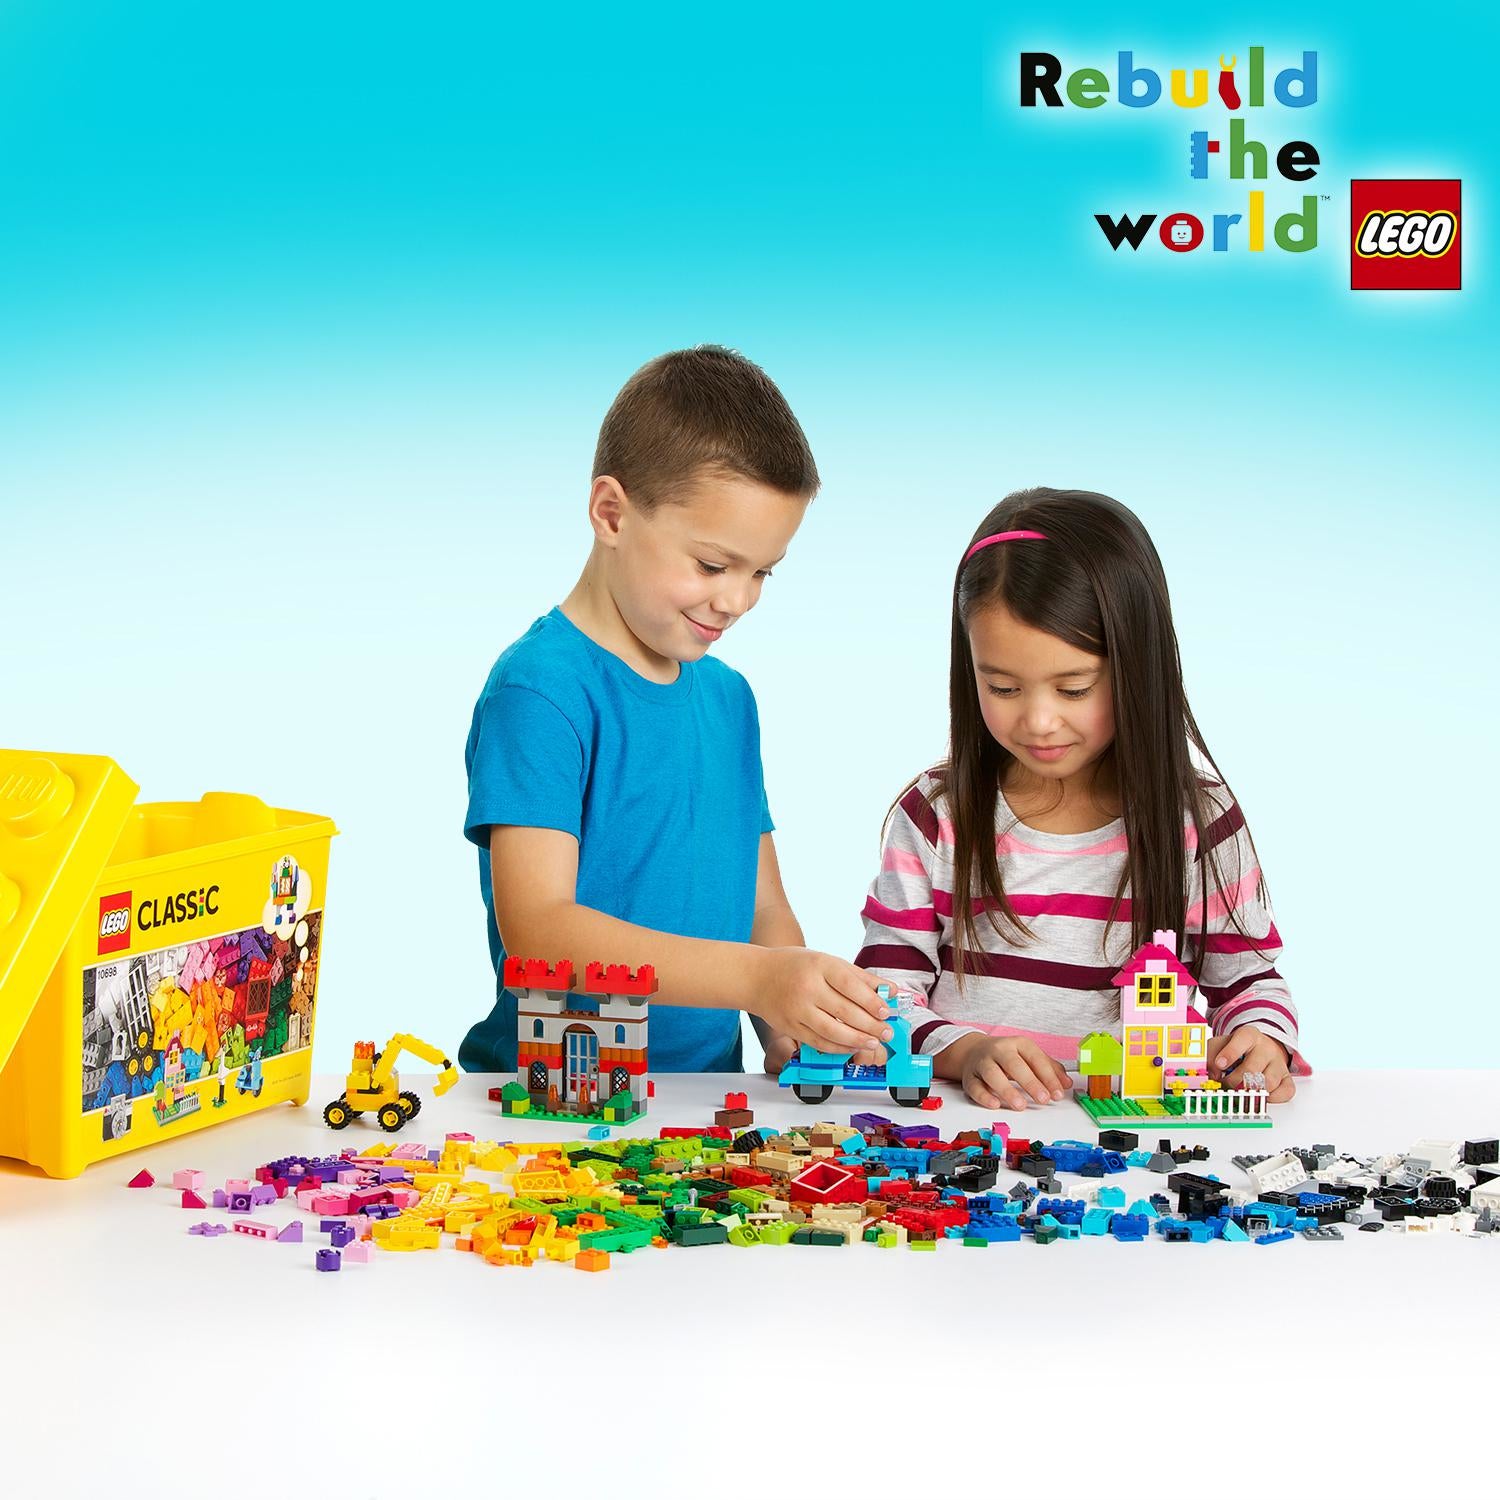 10698 LEGO ® Classic - Scatola mattoncini creativi grande